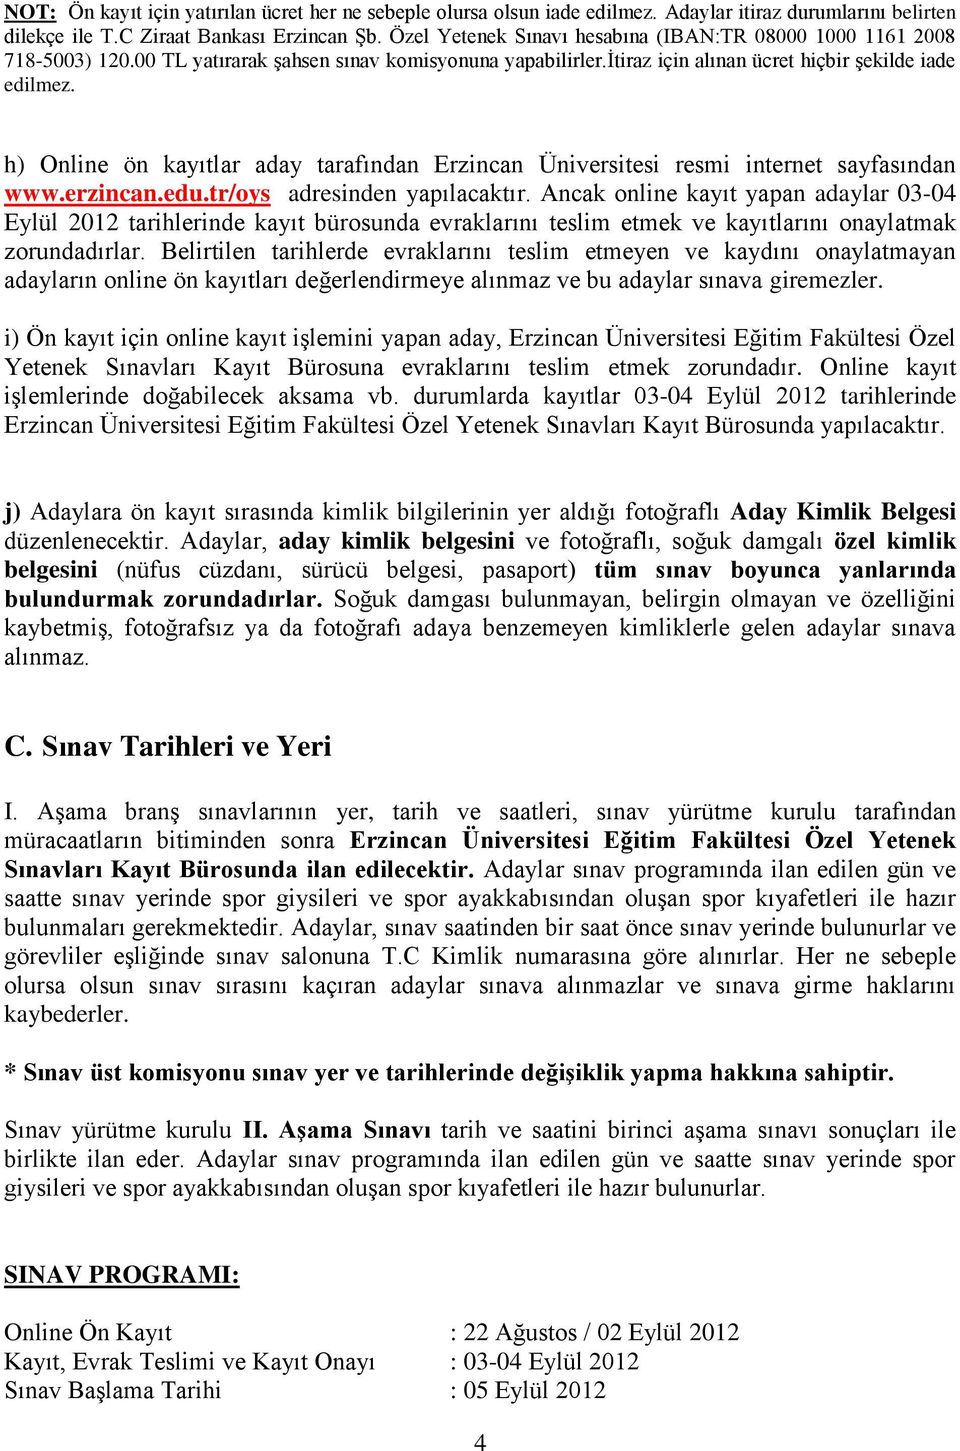 h) Online ön kayıtlar aday tarafından Erzincan Üniversitesi resmi internet sayfasından www.erzincan.edu.tr/oys adresinden yapılacaktır.